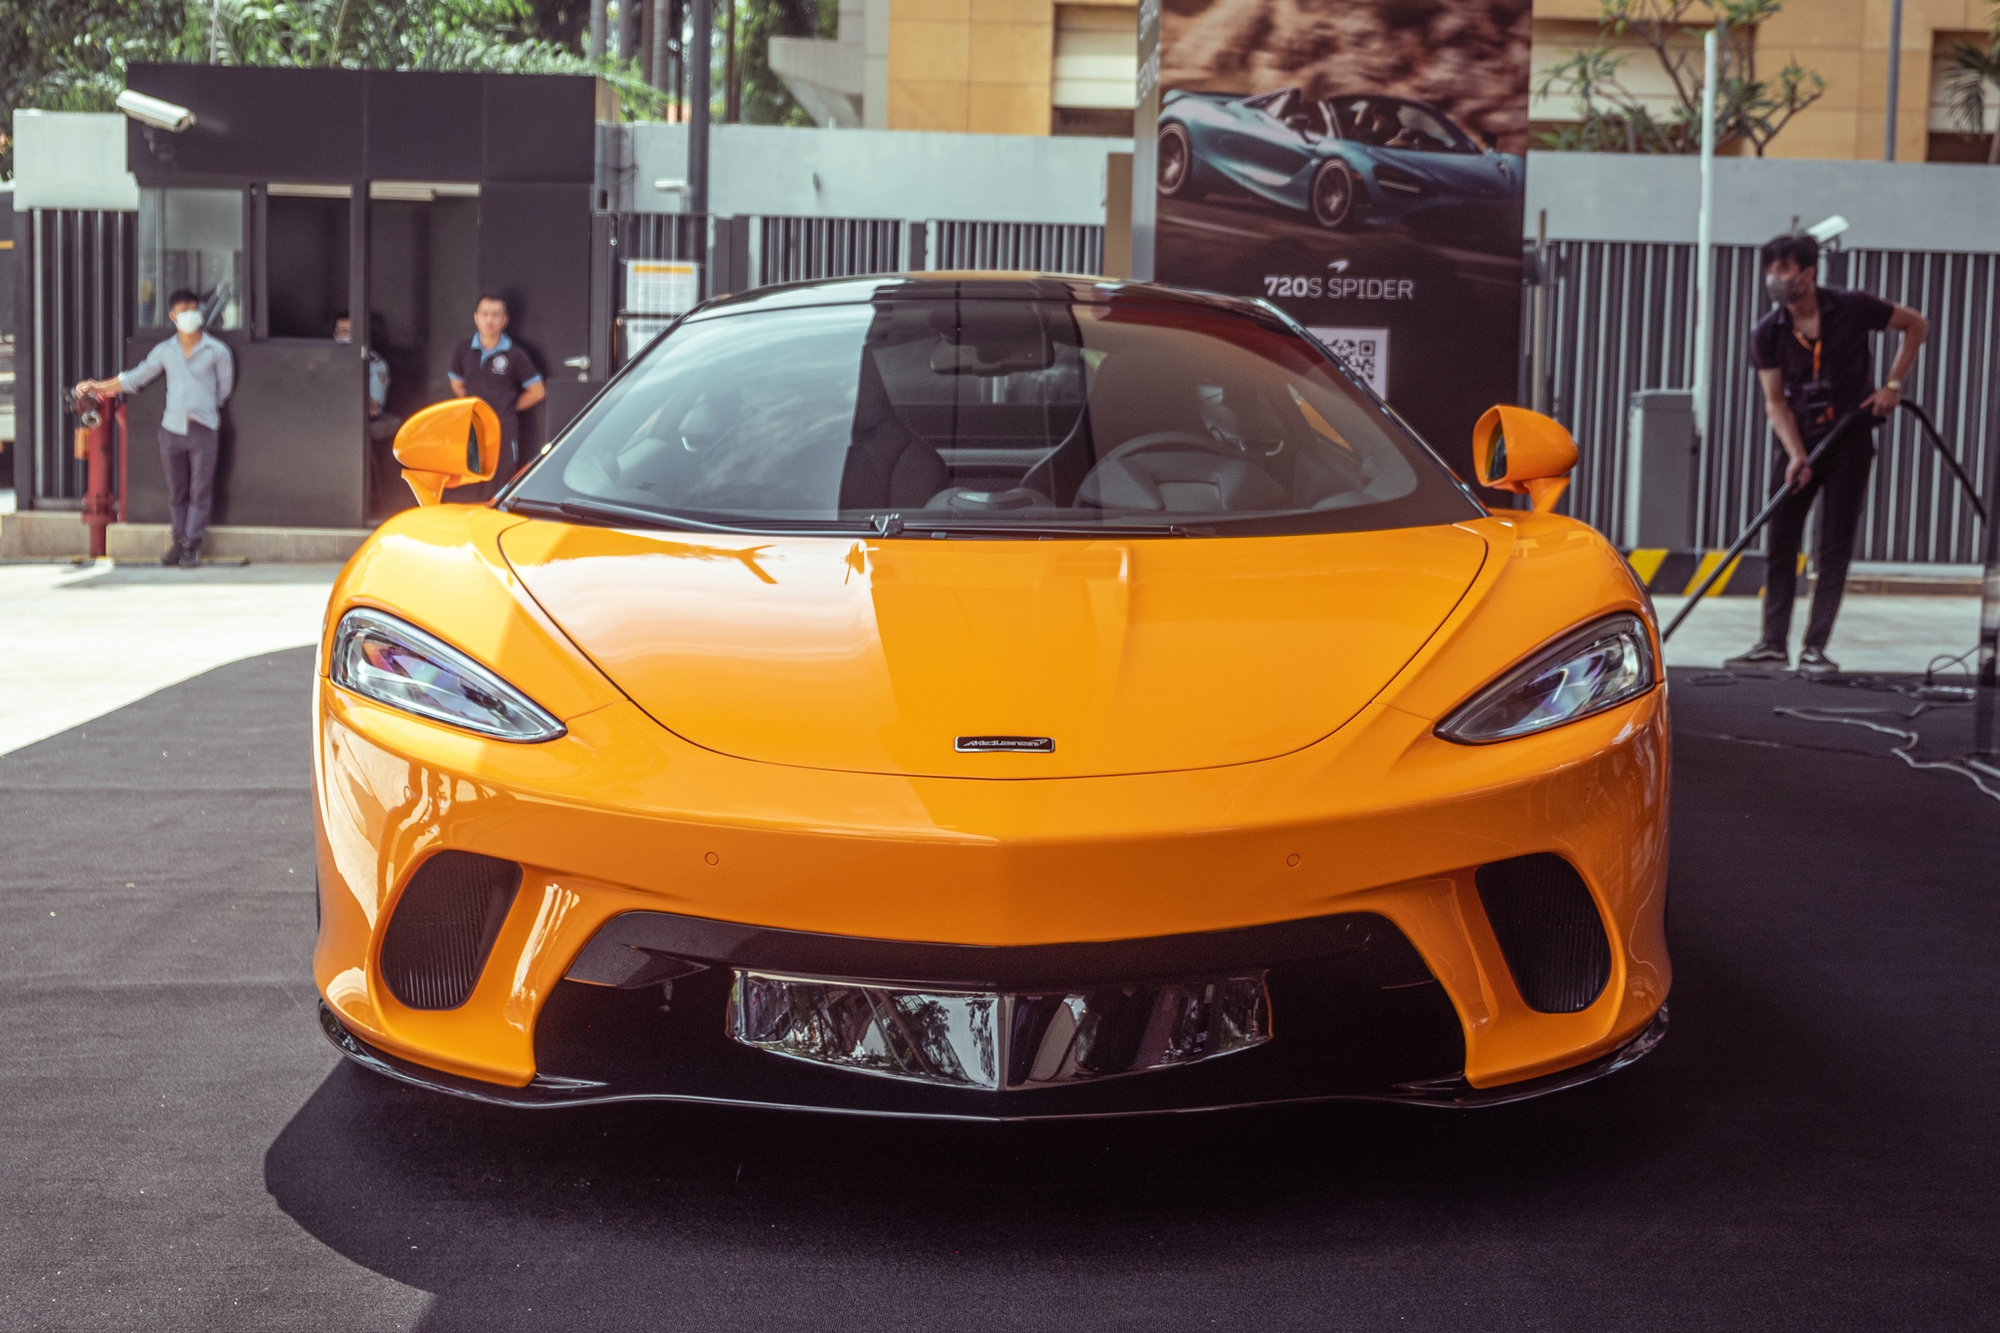 Ra mắt McLaren GT tại Việt Nam: Giá 16 tỷ đồng, thêm lựa chọn cho giới nhà giàu Việt - Ảnh 4.